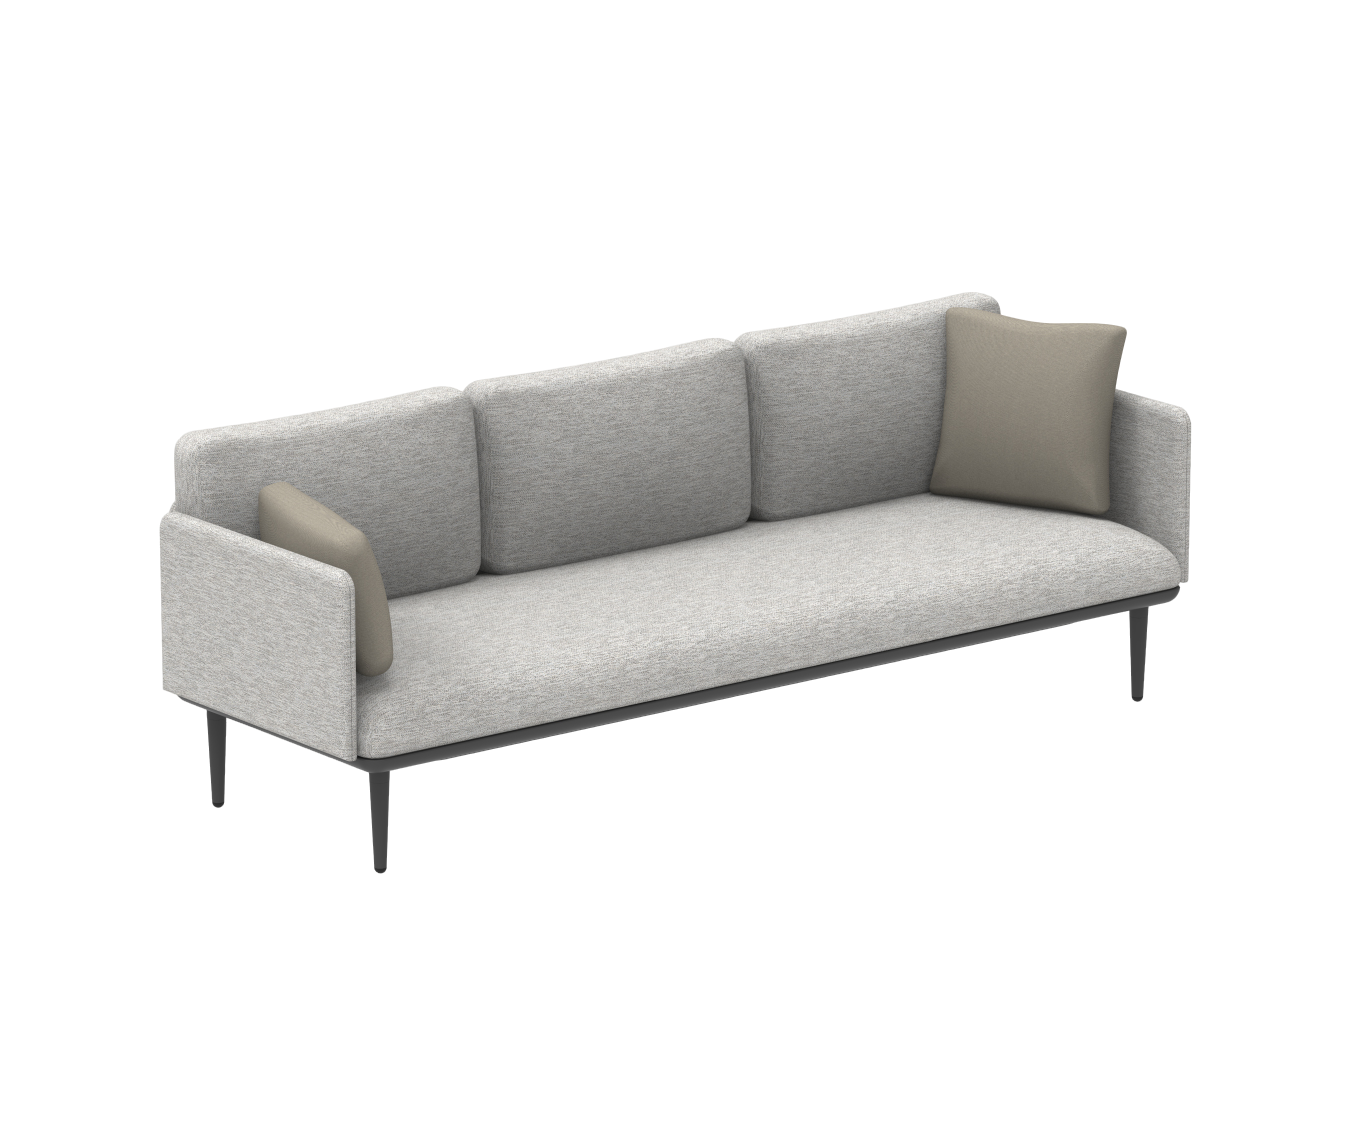 Styletto Lounge 3 Seater Sofa | Royal Botania